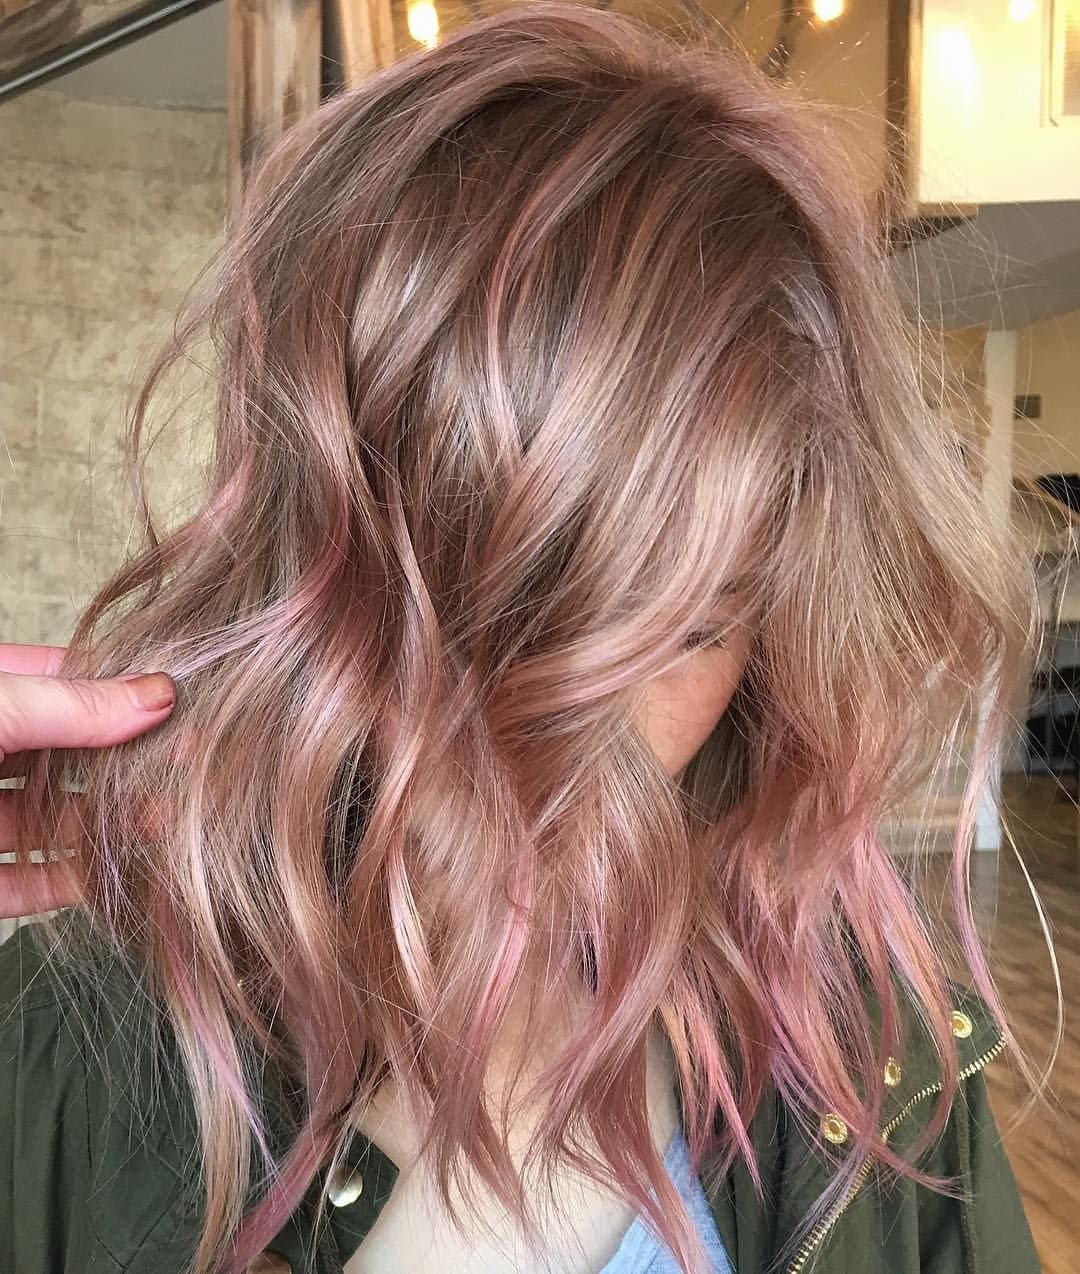 Русый цвет волос с розовым оттенком